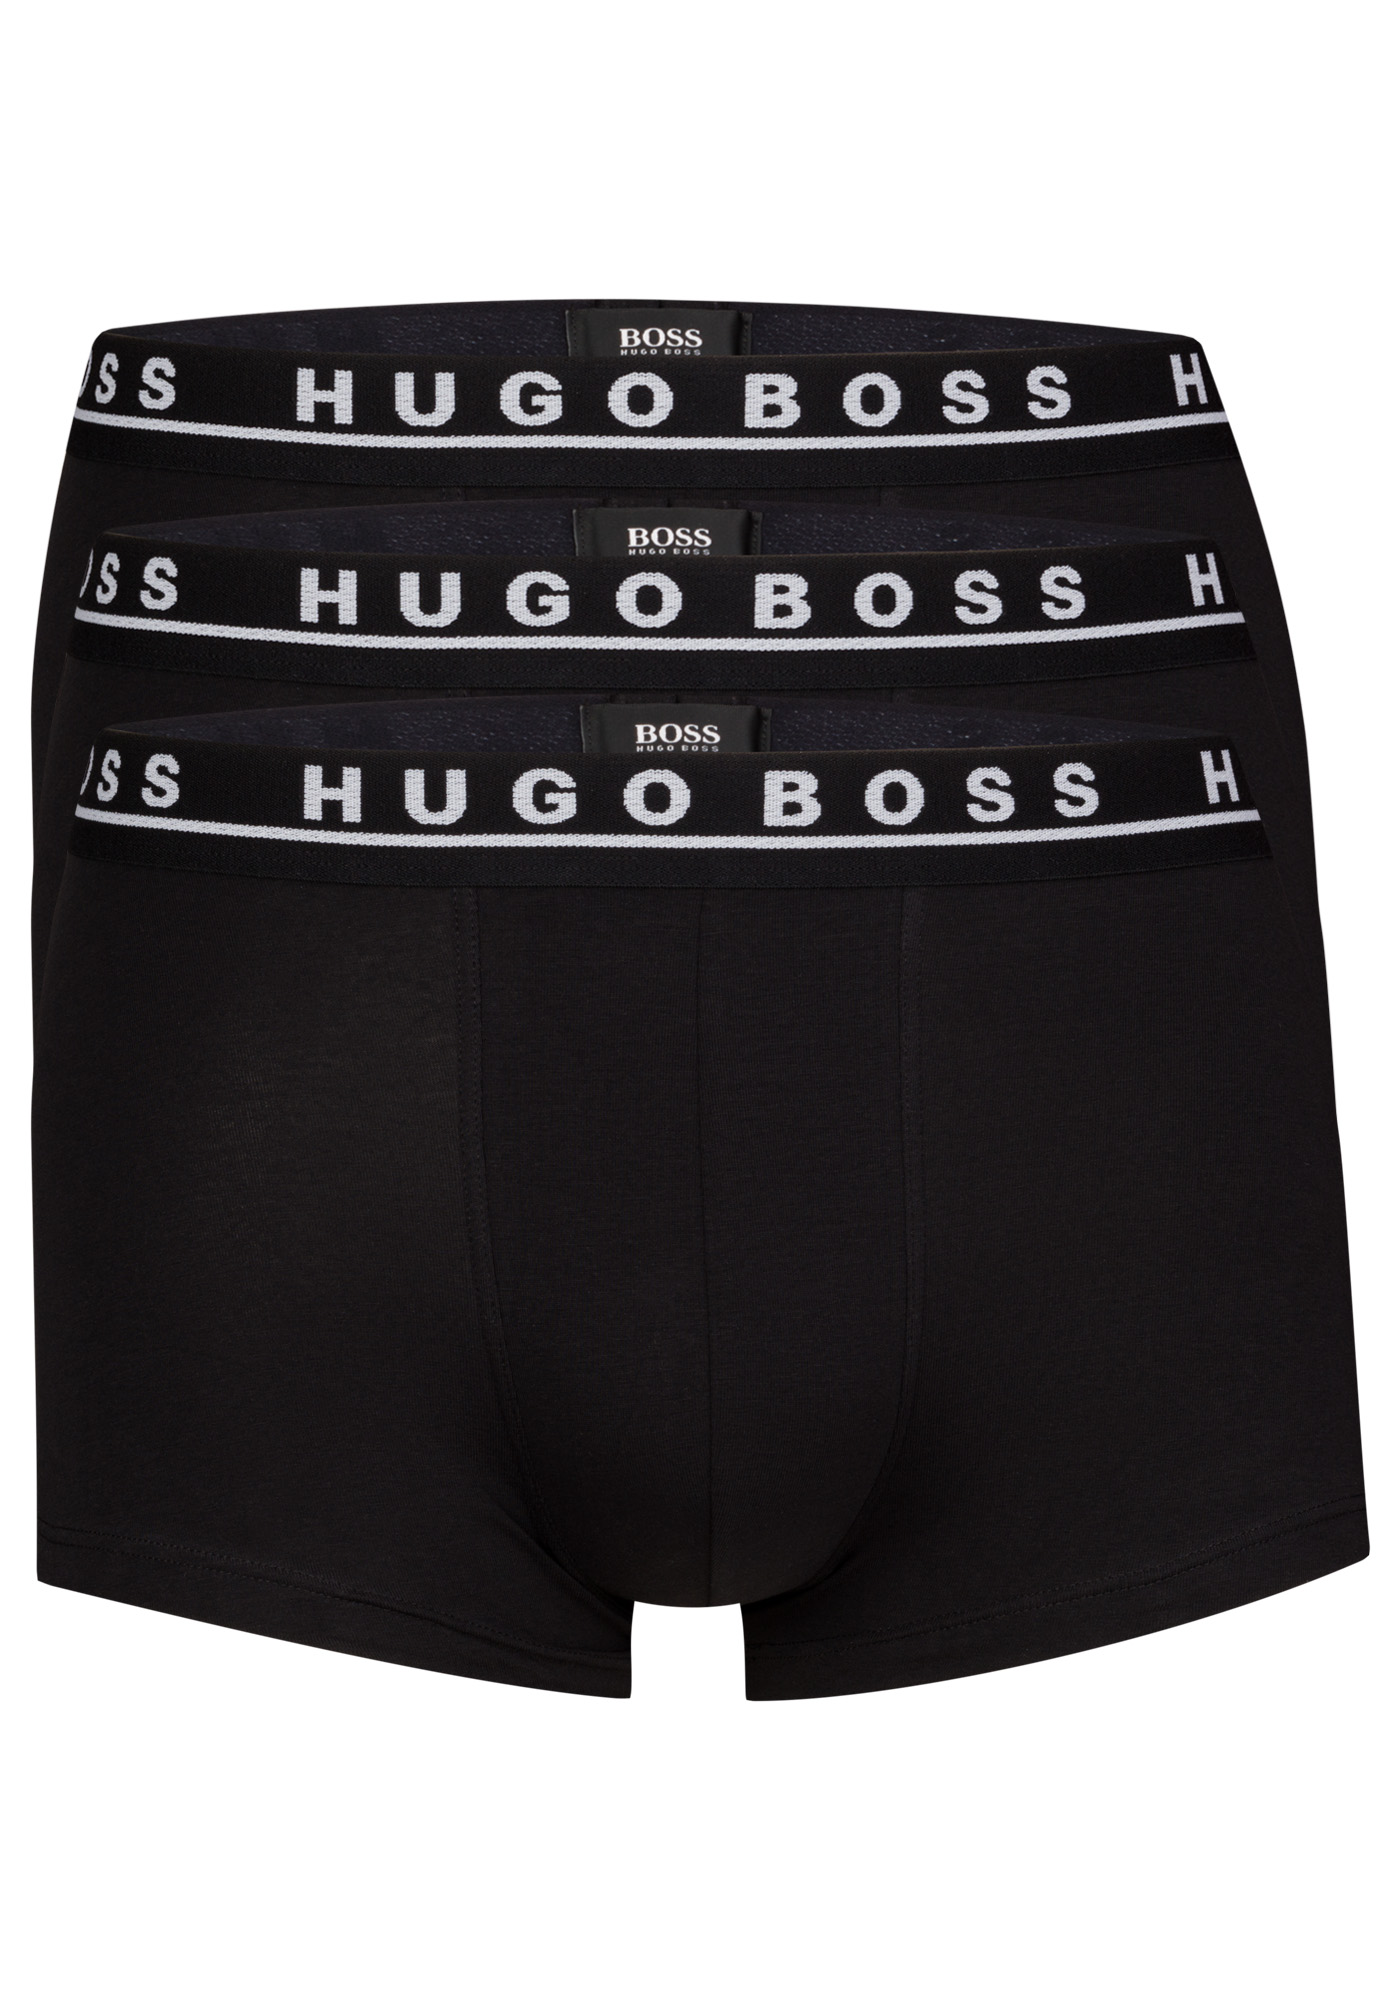 hugo boss h